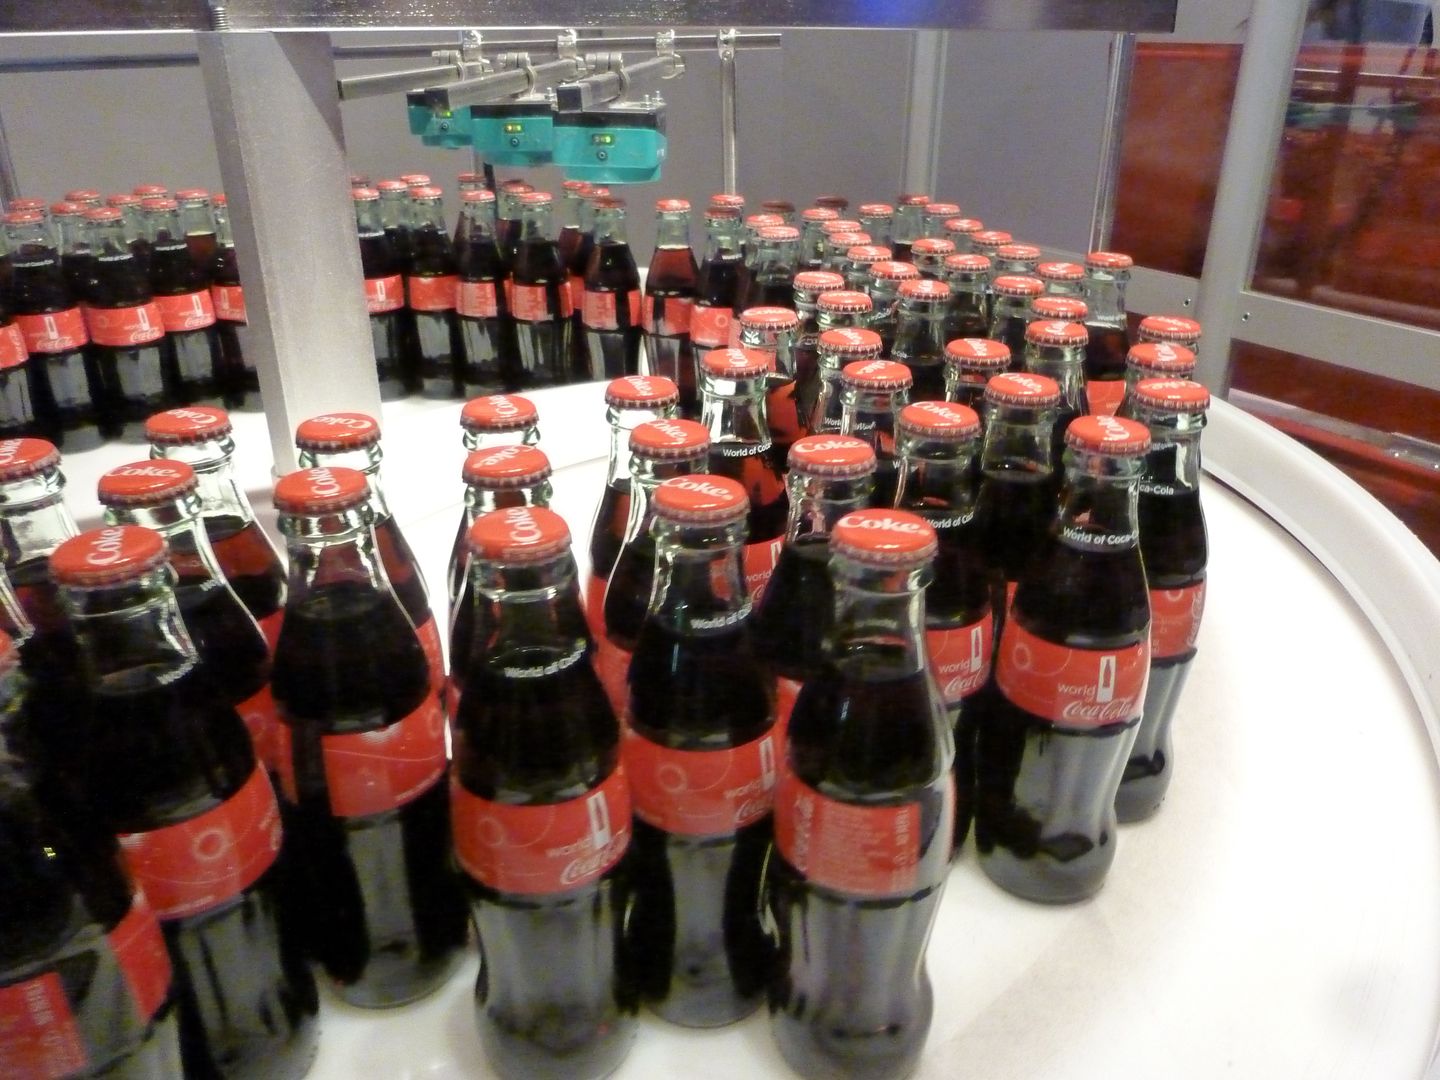  La botella contour es la protagonista absoluta del mundo de Coca-Cola. (Miguel Ayuso)